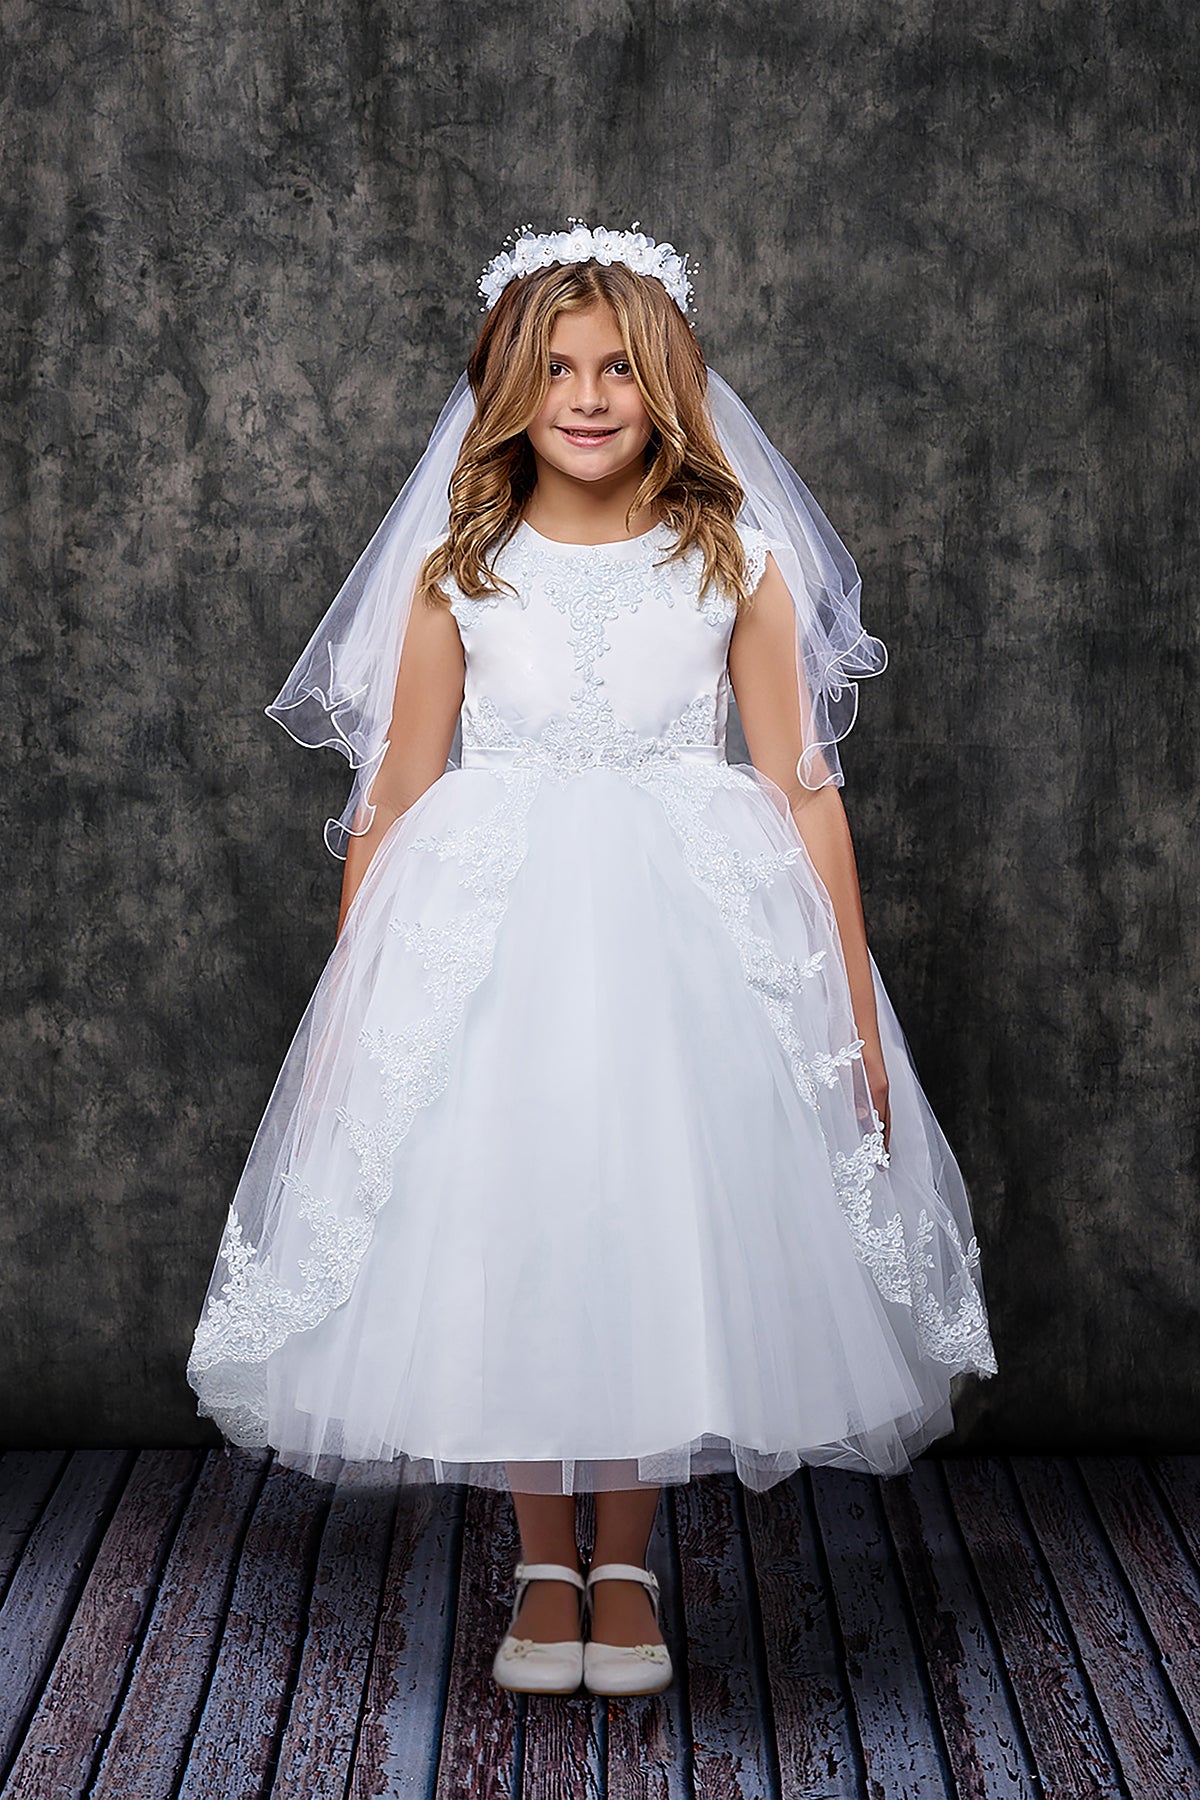 Lace Appliqué Swoop Train First Communion Dress - White